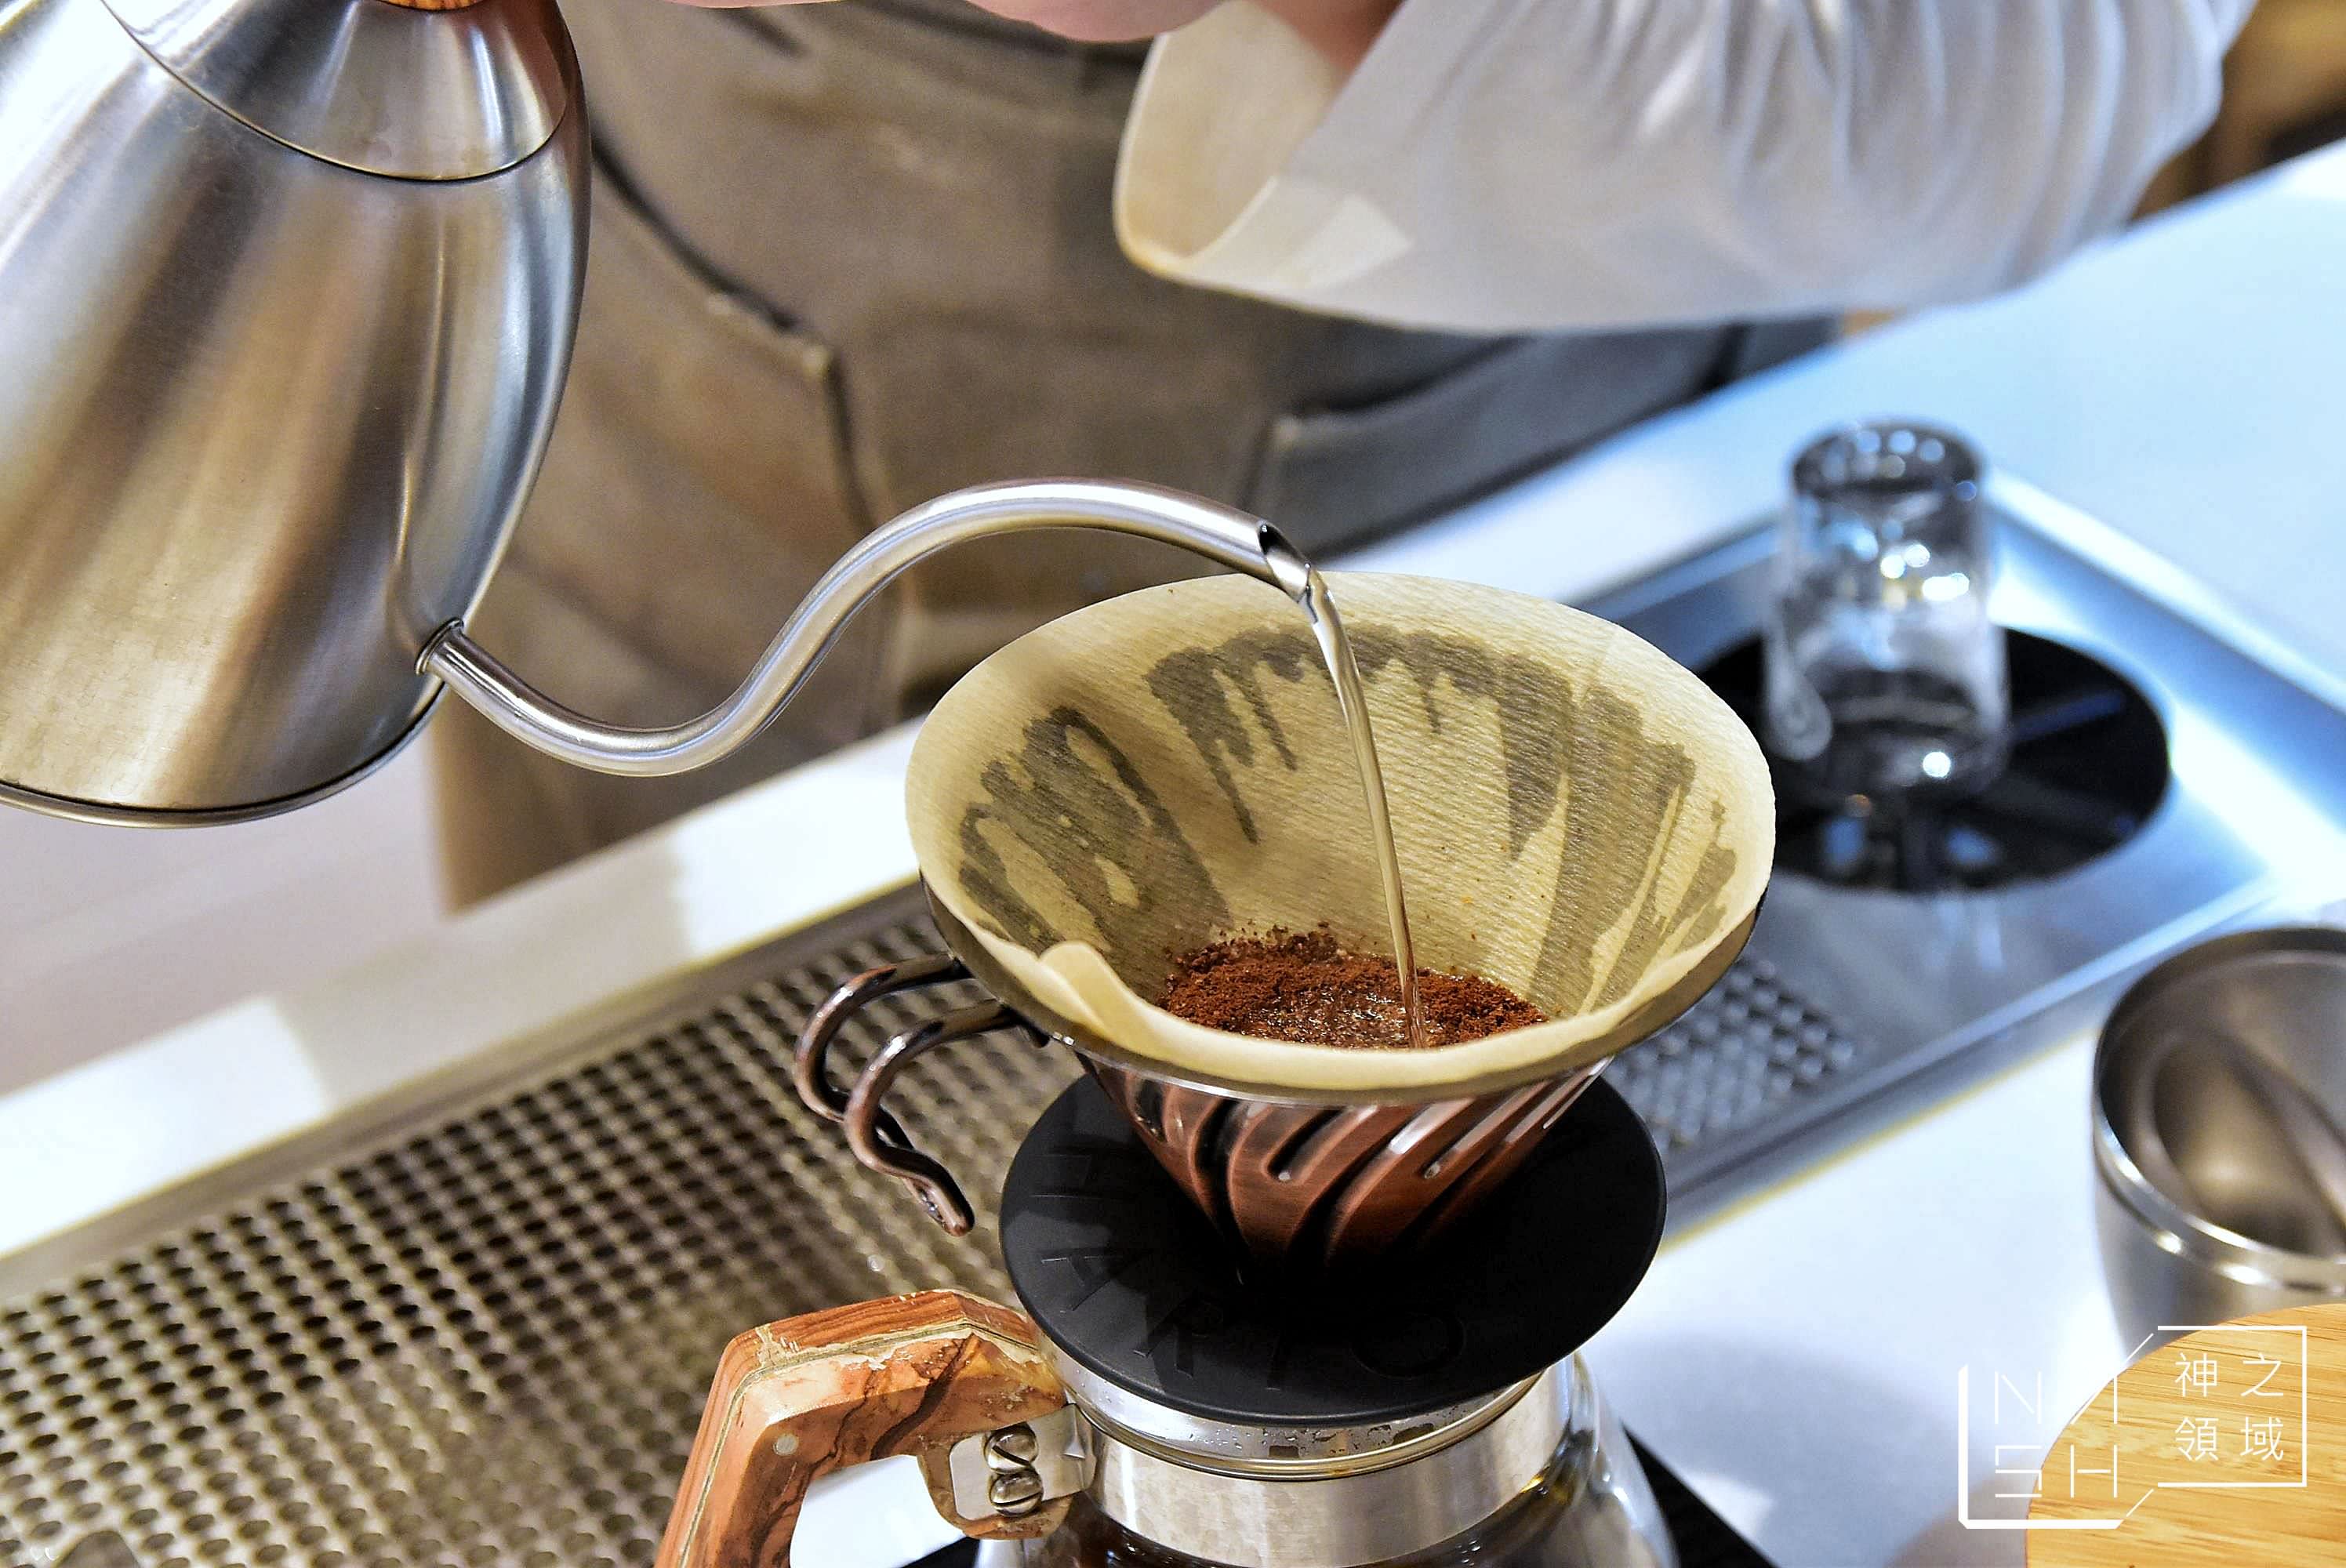 R．U Coffee,天母美食,天母咖啡,芝山咖啡,芝山咖啡推薦